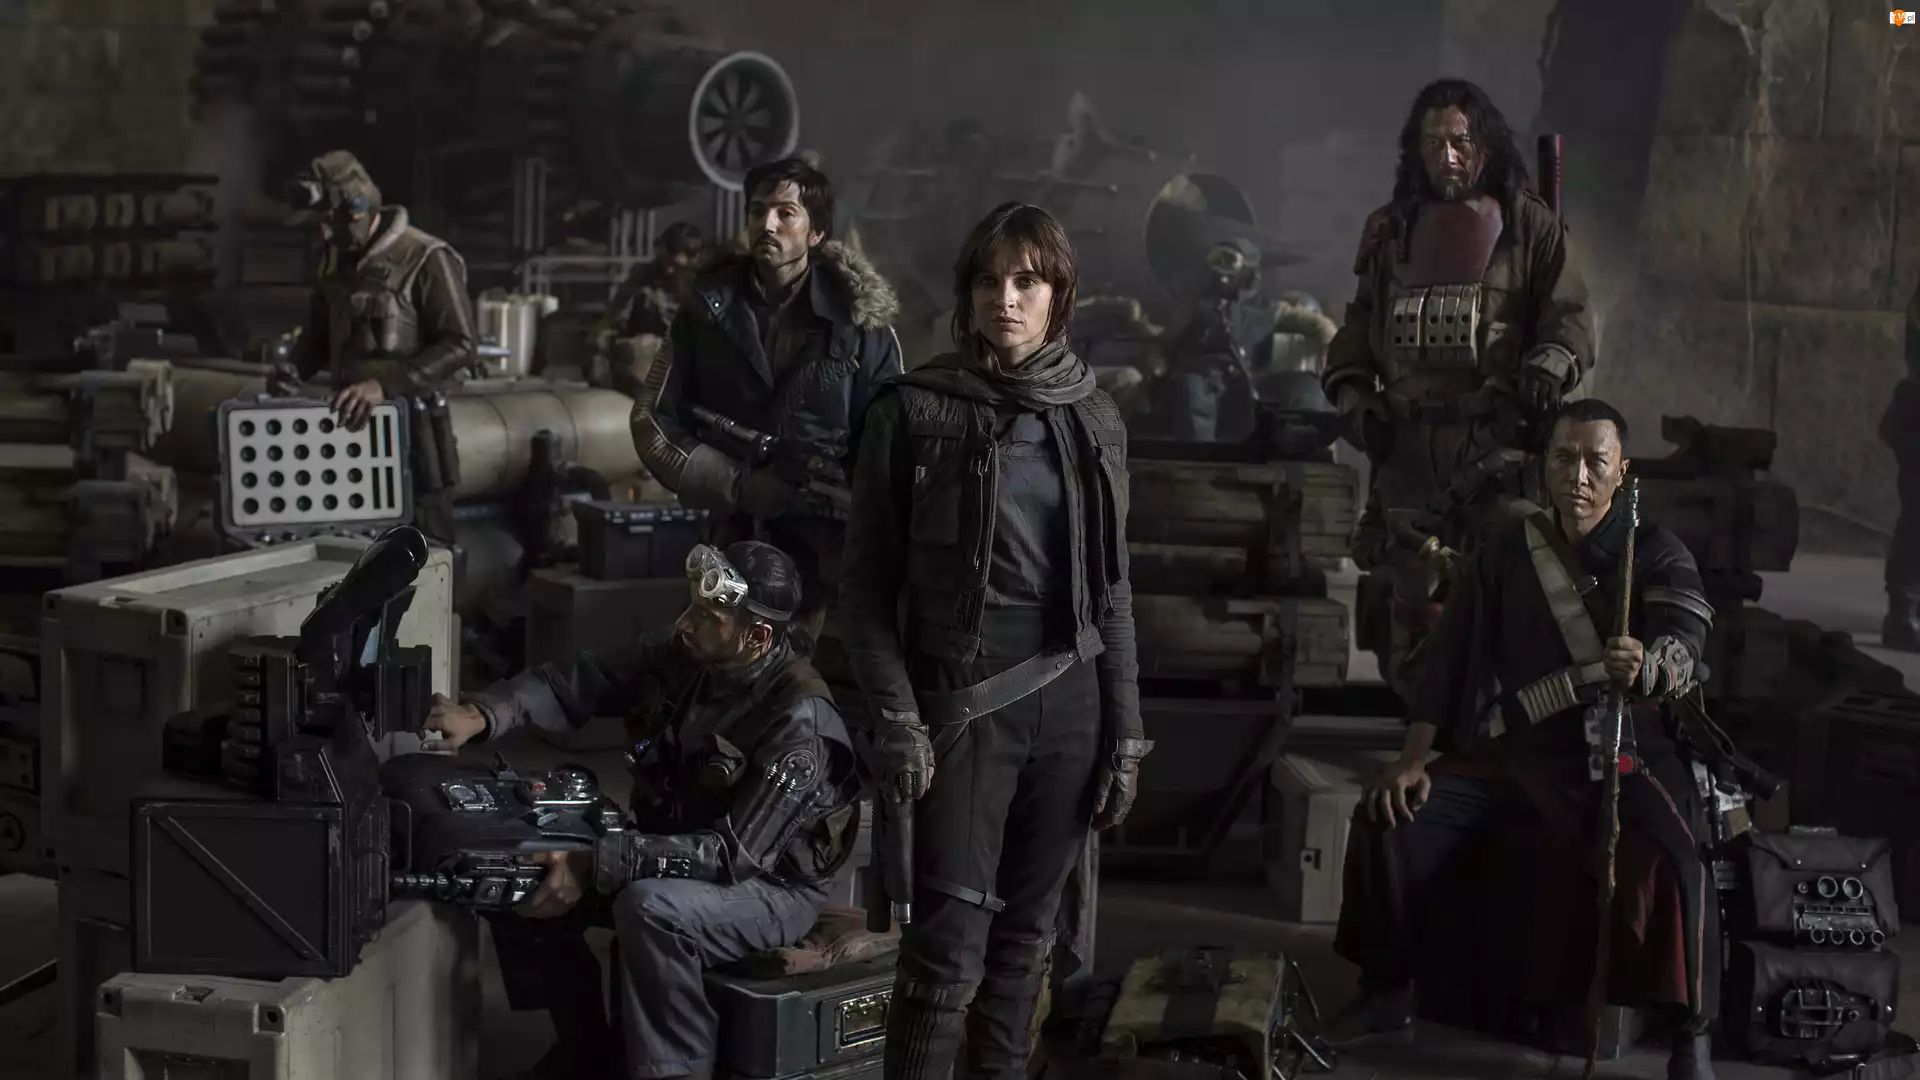 Felicity Jones, Film, Łotr 1. Gwiezdne wojny – historie, Rogue One: A Star Wars Story